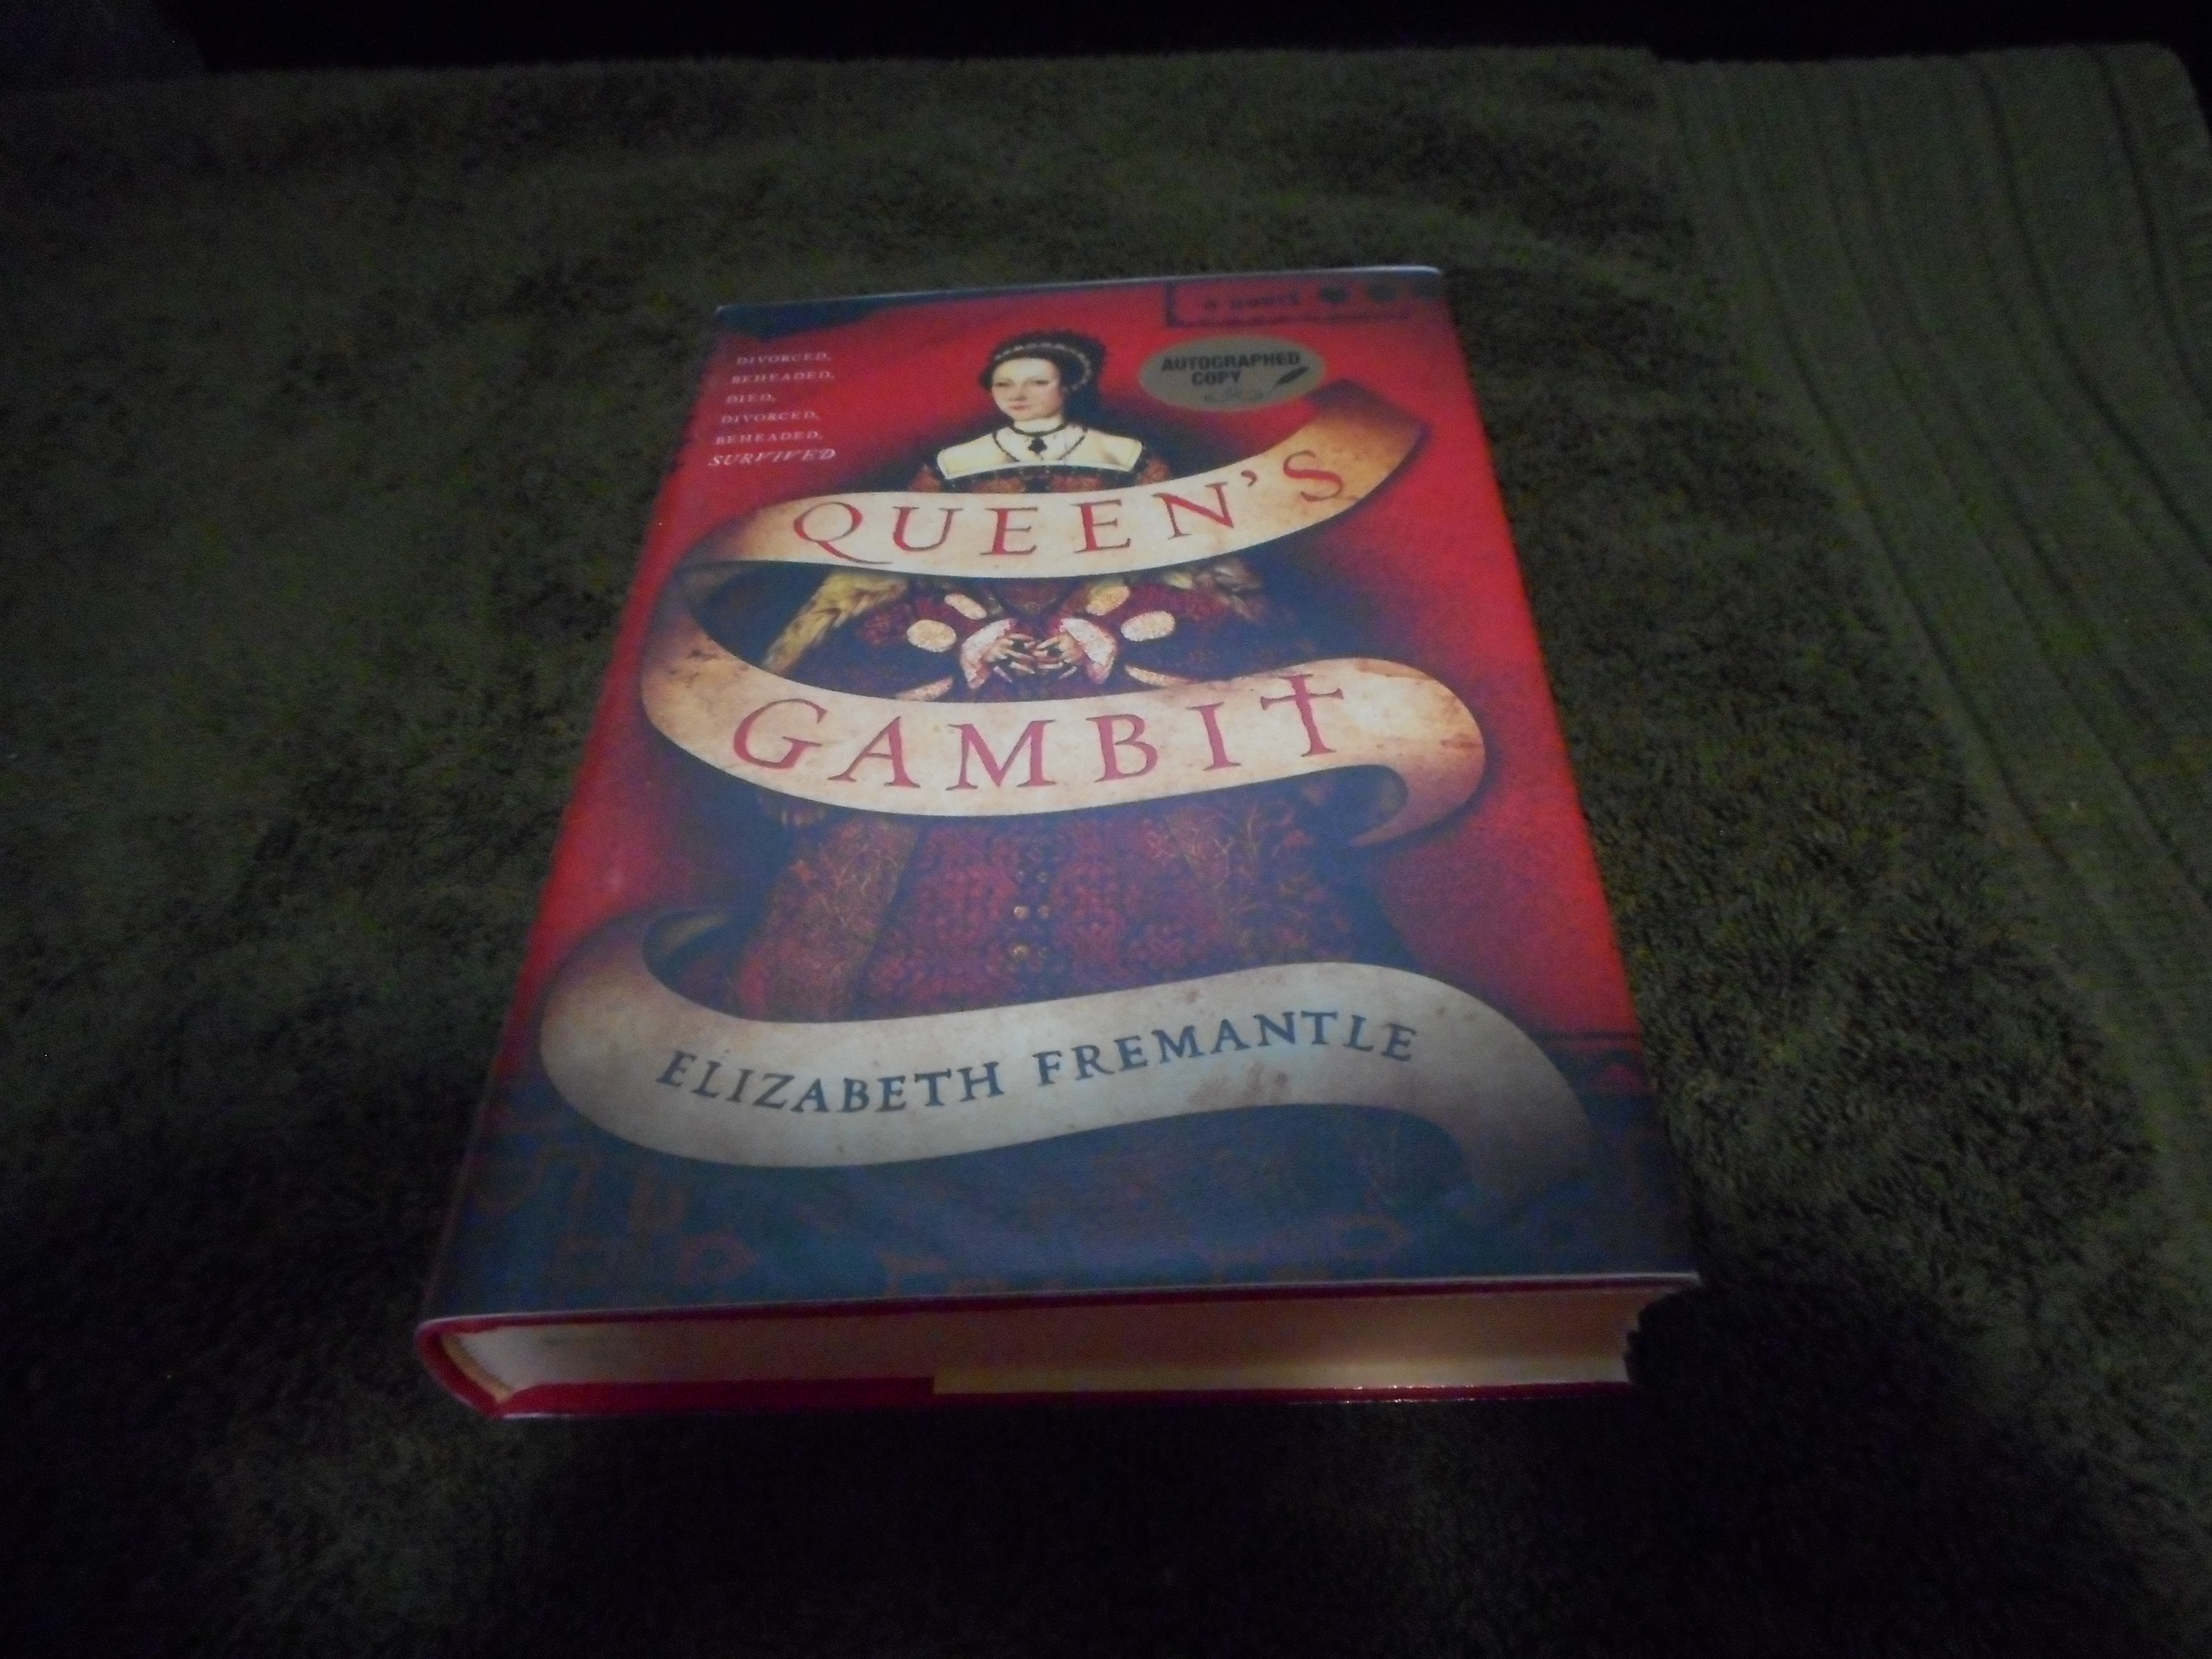 Queen's Gambit by Elizabeth Fremantle